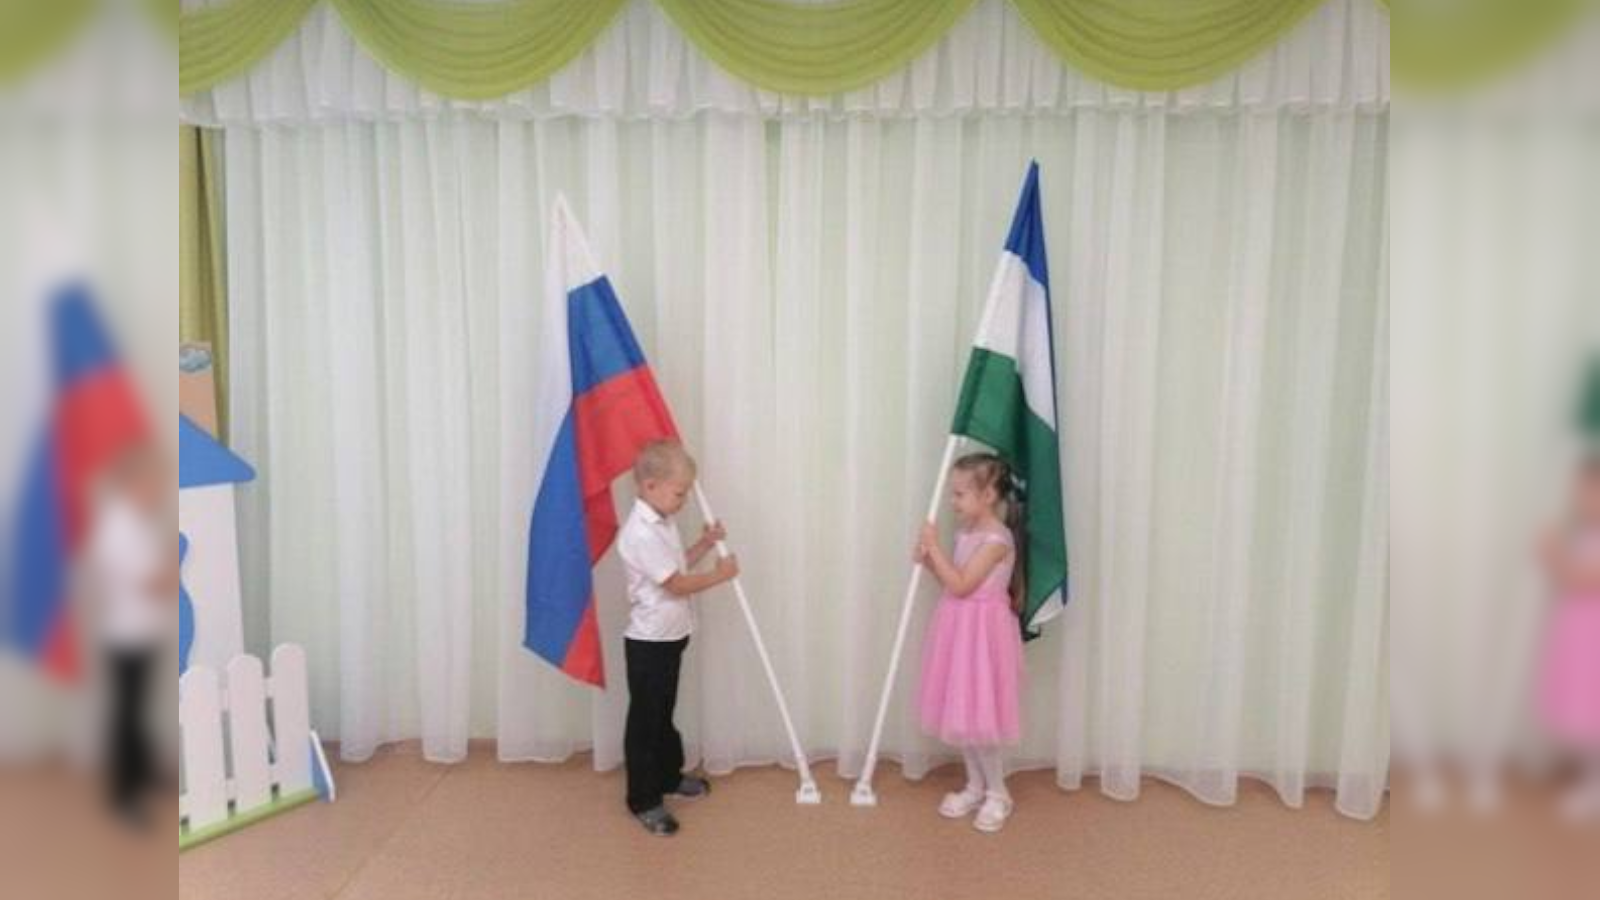 В Башкортостане теперь каждое утро в детсадах будут поднимать флаги РФ и РБ, а также петь два гимна